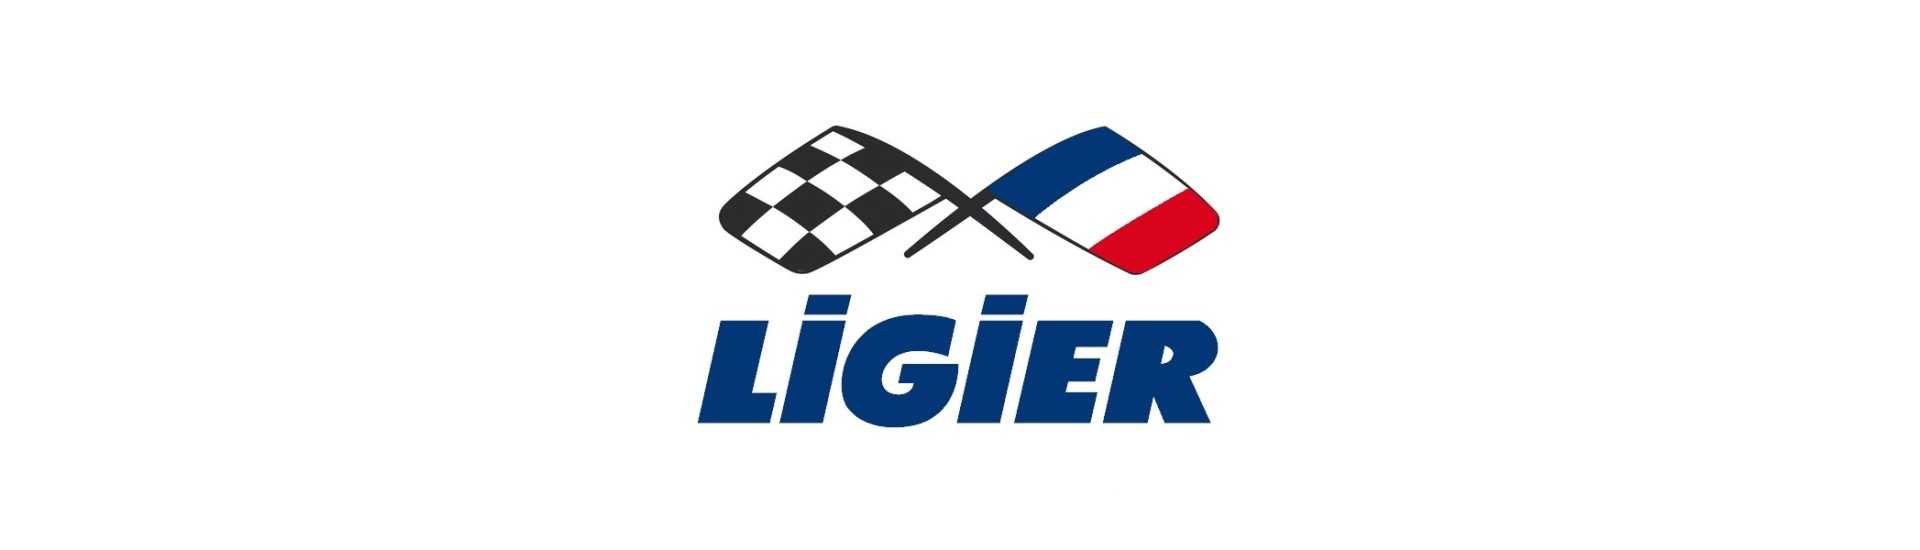 Askfat till bästa pris för en bil utan körkort Ligier